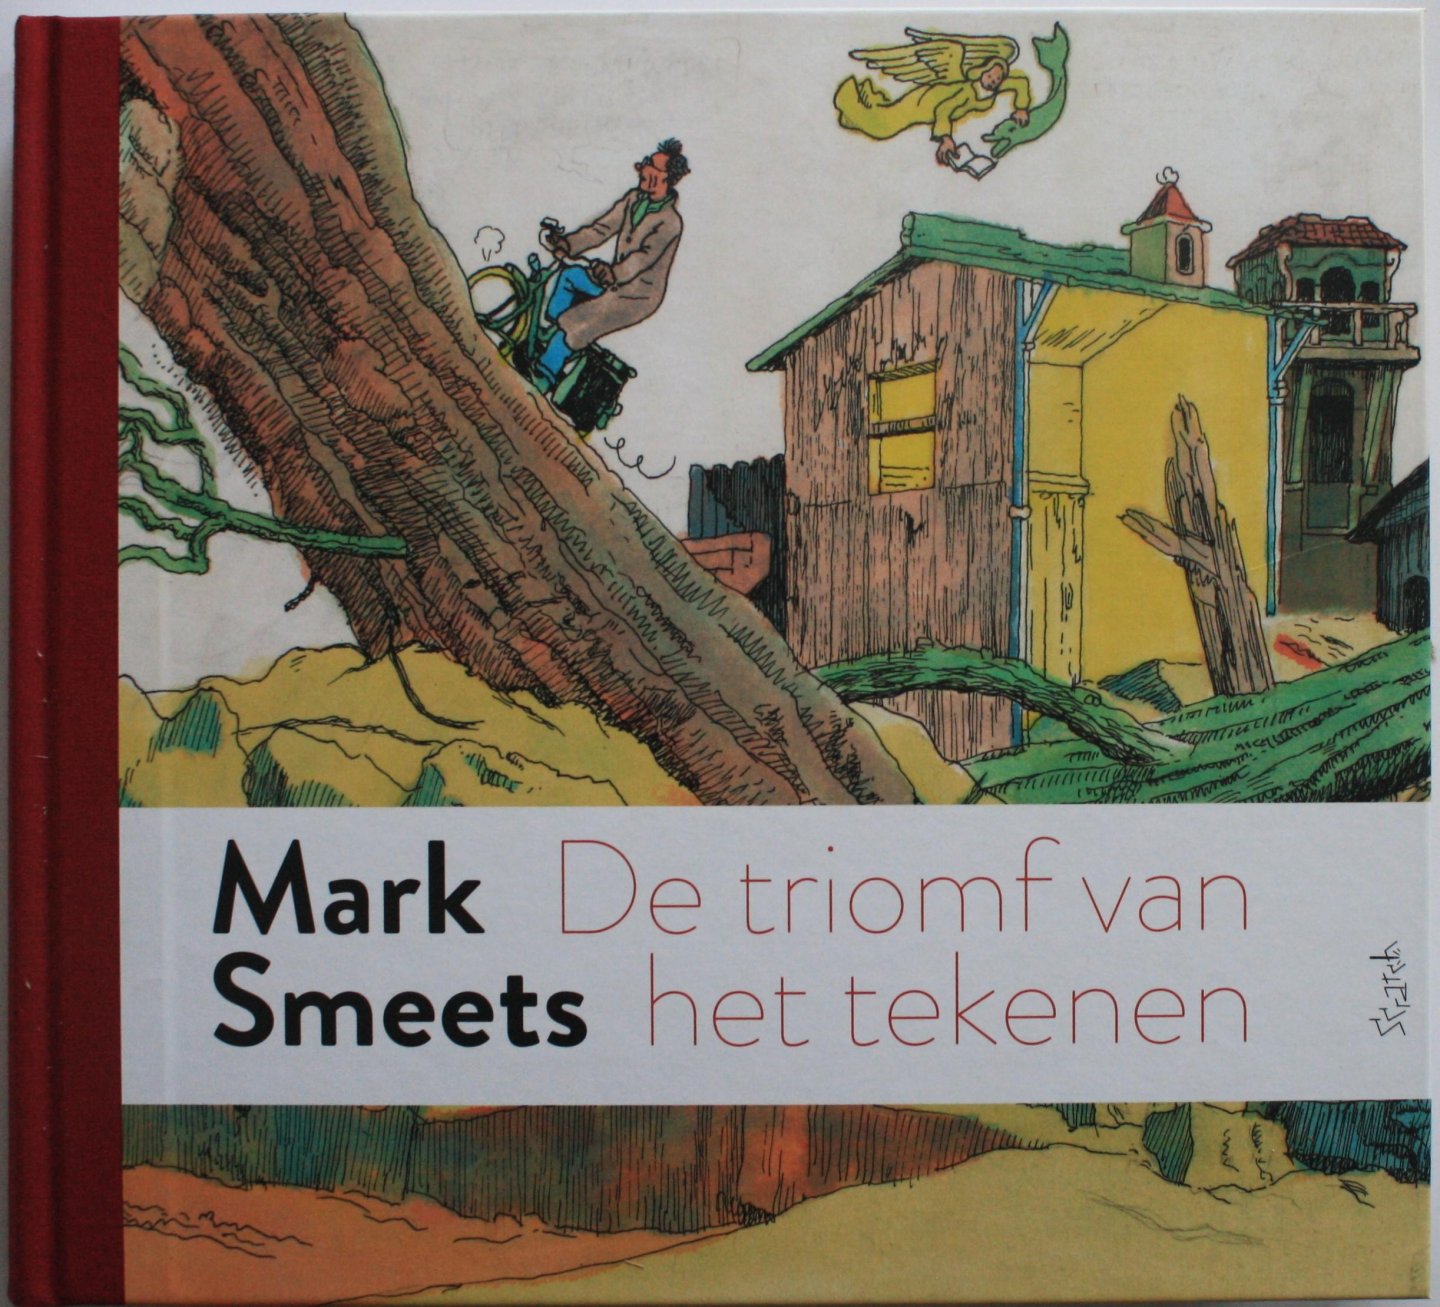 [Mark Smeets] Schreuders, Piet e.a. (samenstelling) - De triomf van het tekenen. Mark Smeets 1942-1999